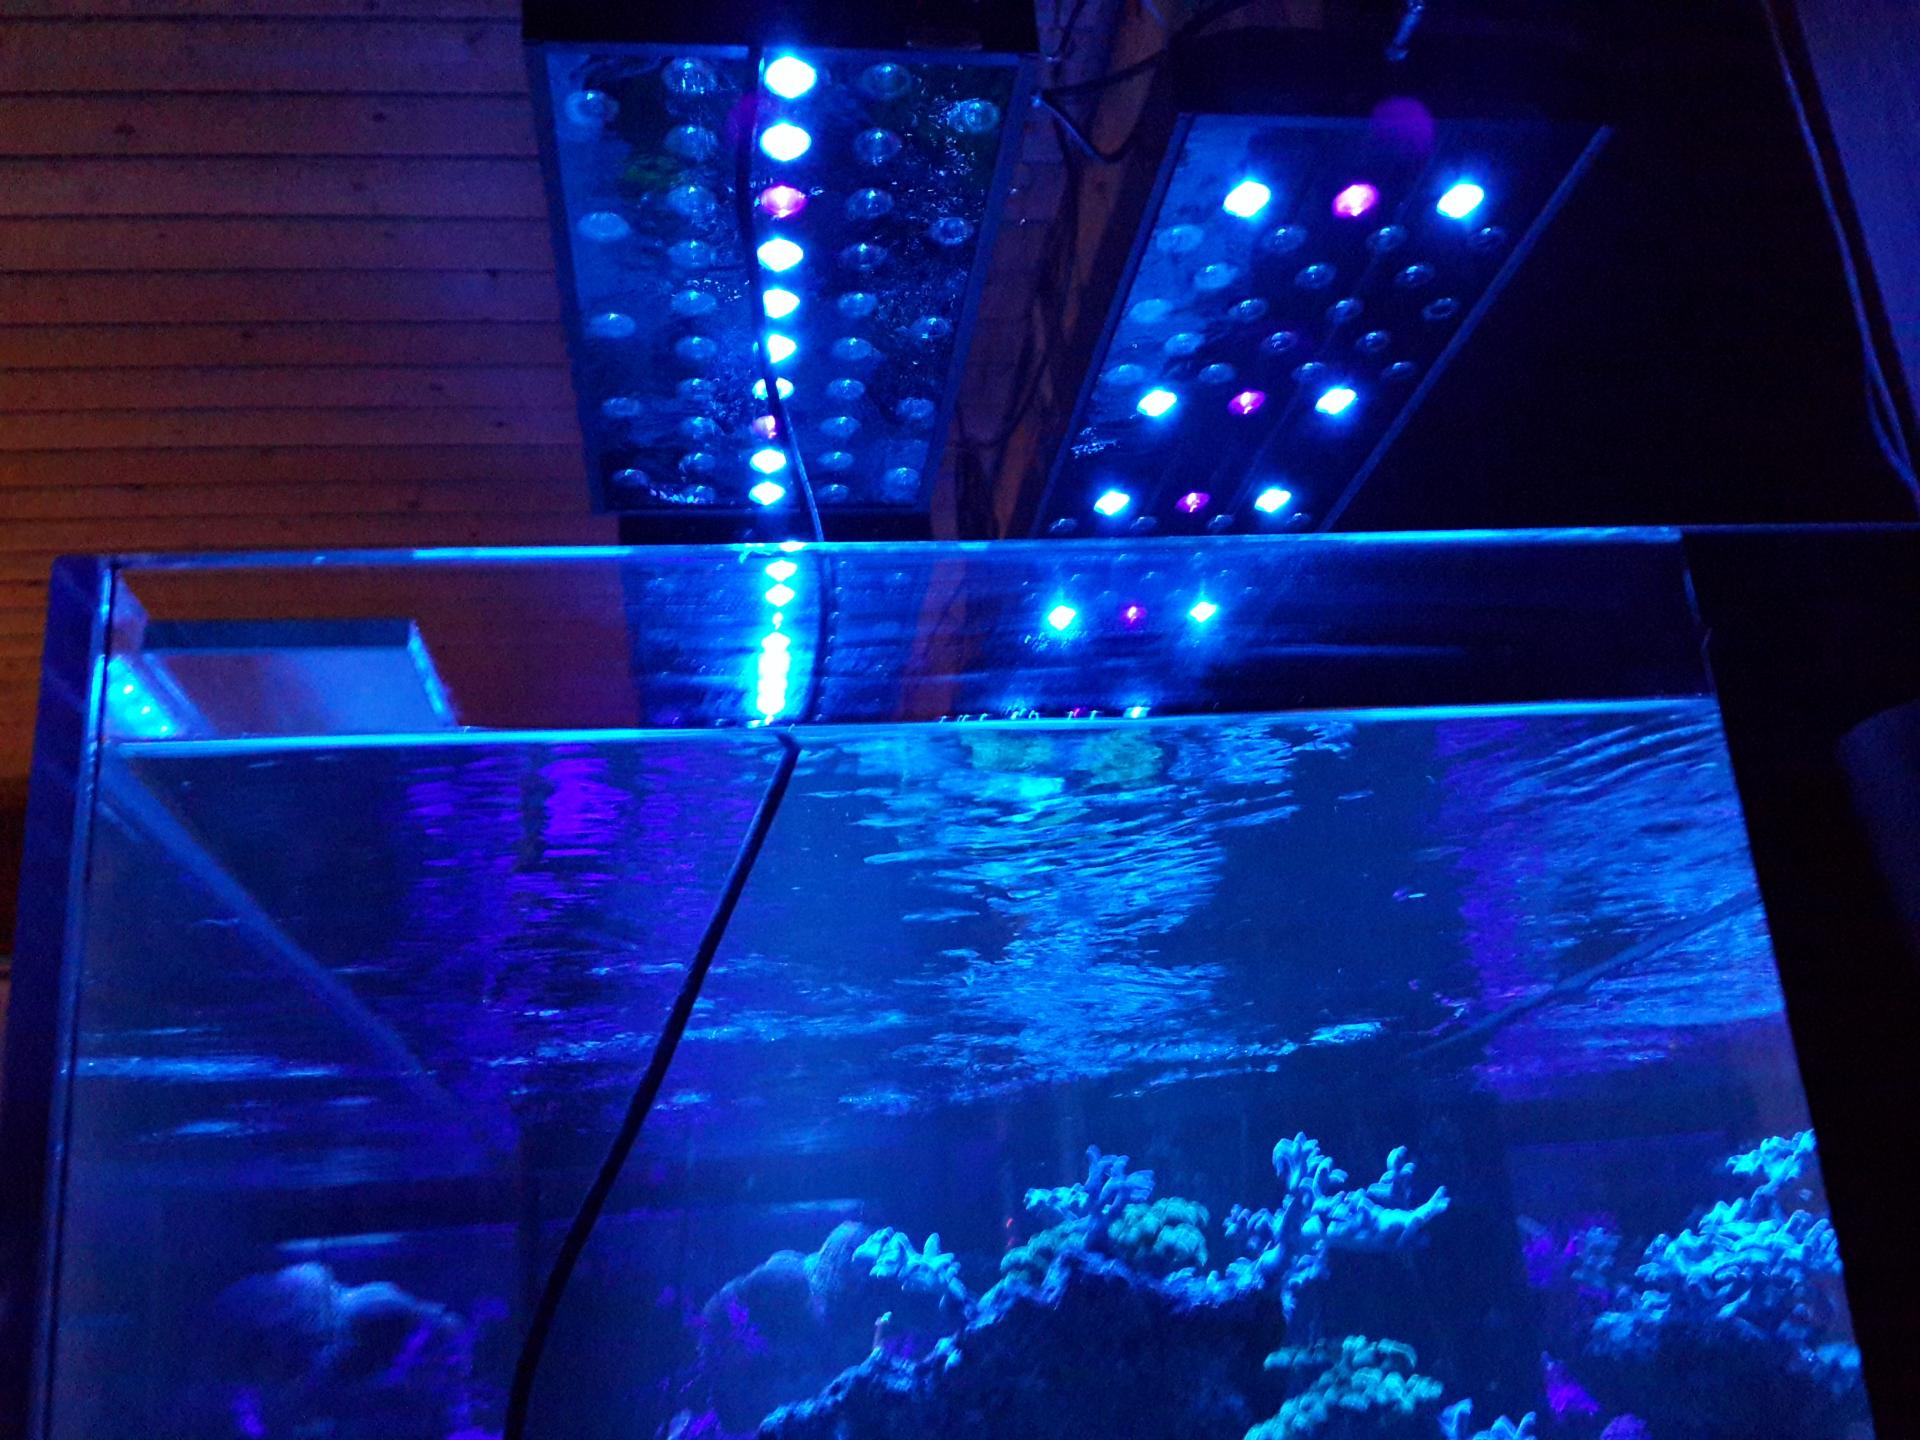 Как сделать освещение аквариума на светодиодах